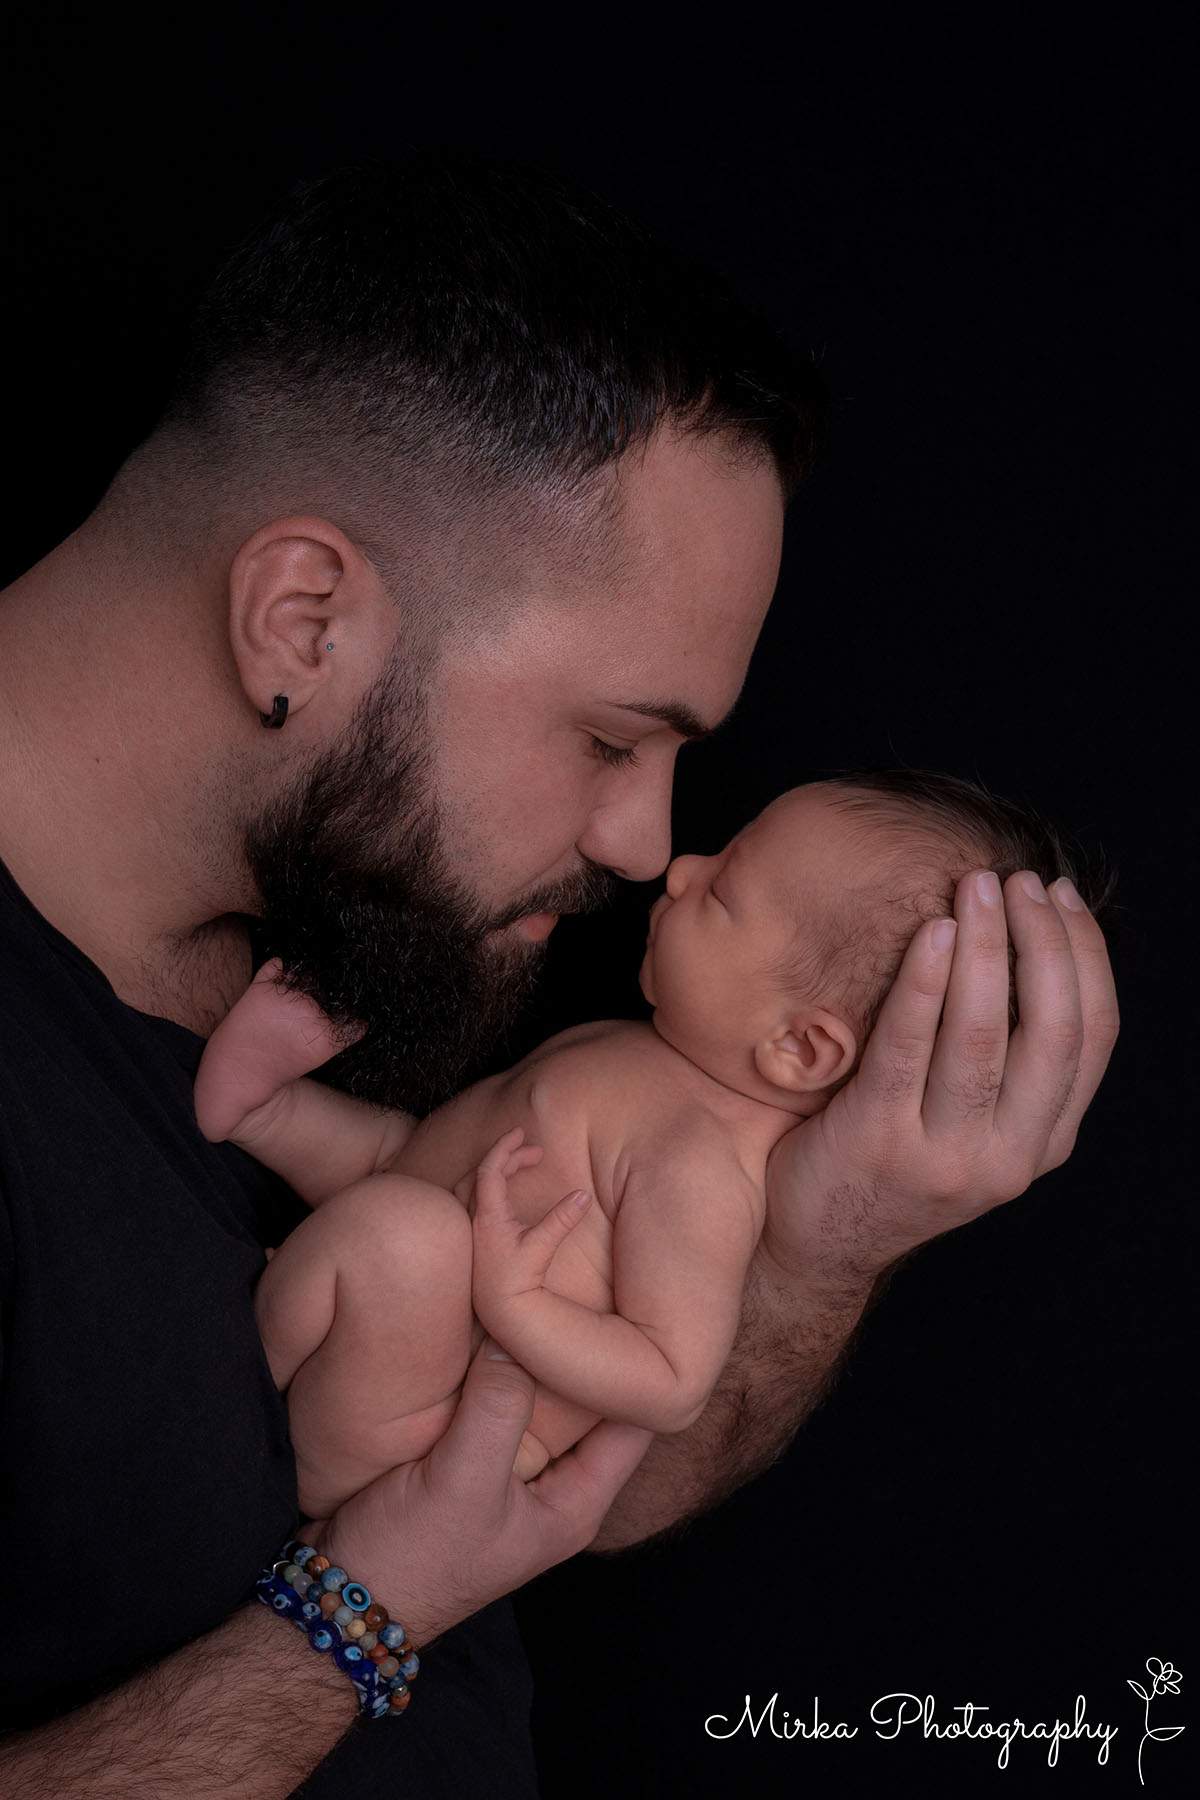 Baby schlafend auf der Hand vom Vater und von mirkaphotography fotografiert